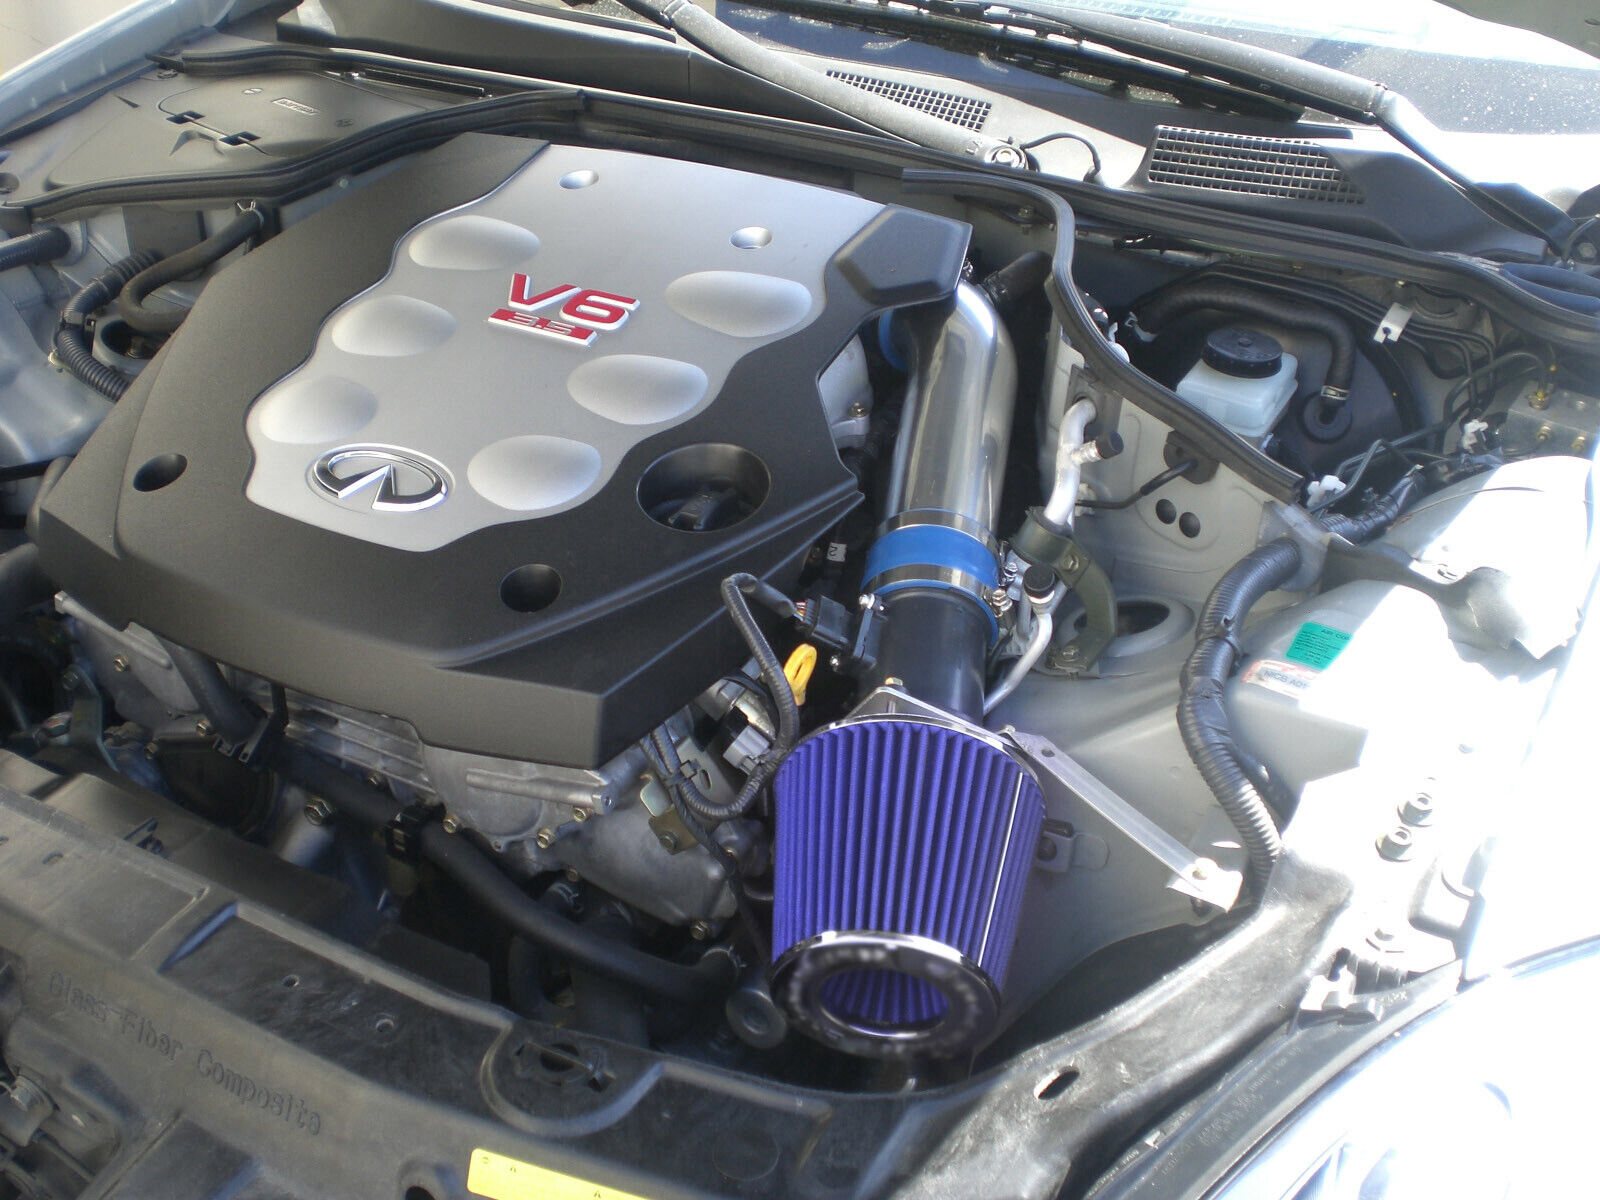 AIR INTAKE FILTER KIT FOR 2003-2006 NISSAN 350Z INFINITI G35 3.5L V6 BLUE